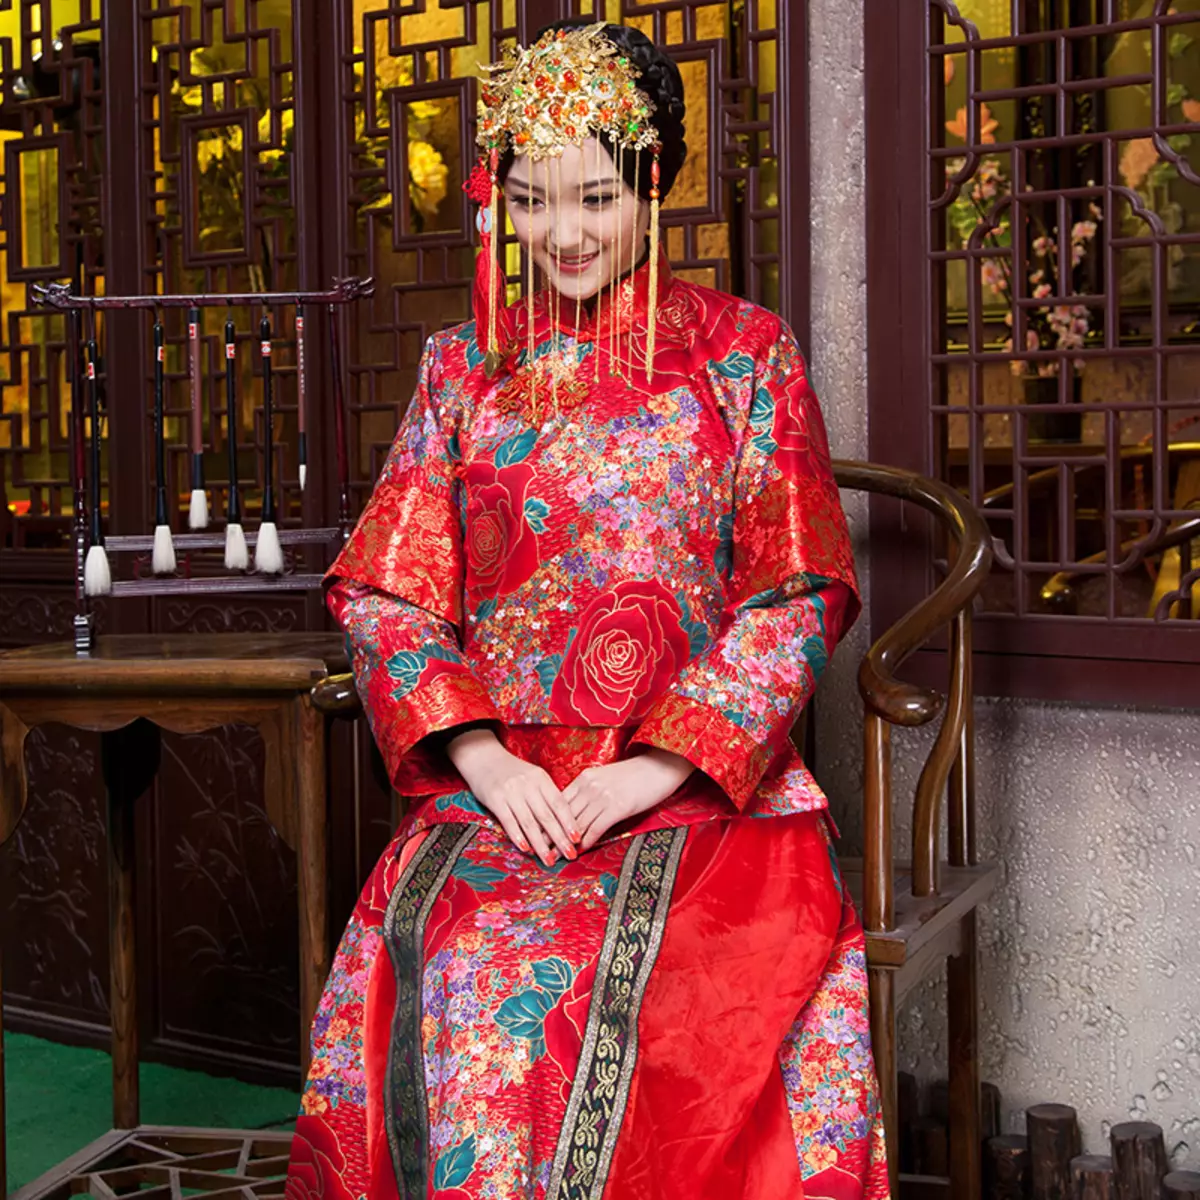 החליפה הלאומית הסינית (73 תמונות): תלבושת נקבה מסורתית של עמי סין, חליפה לילדה 1377_15